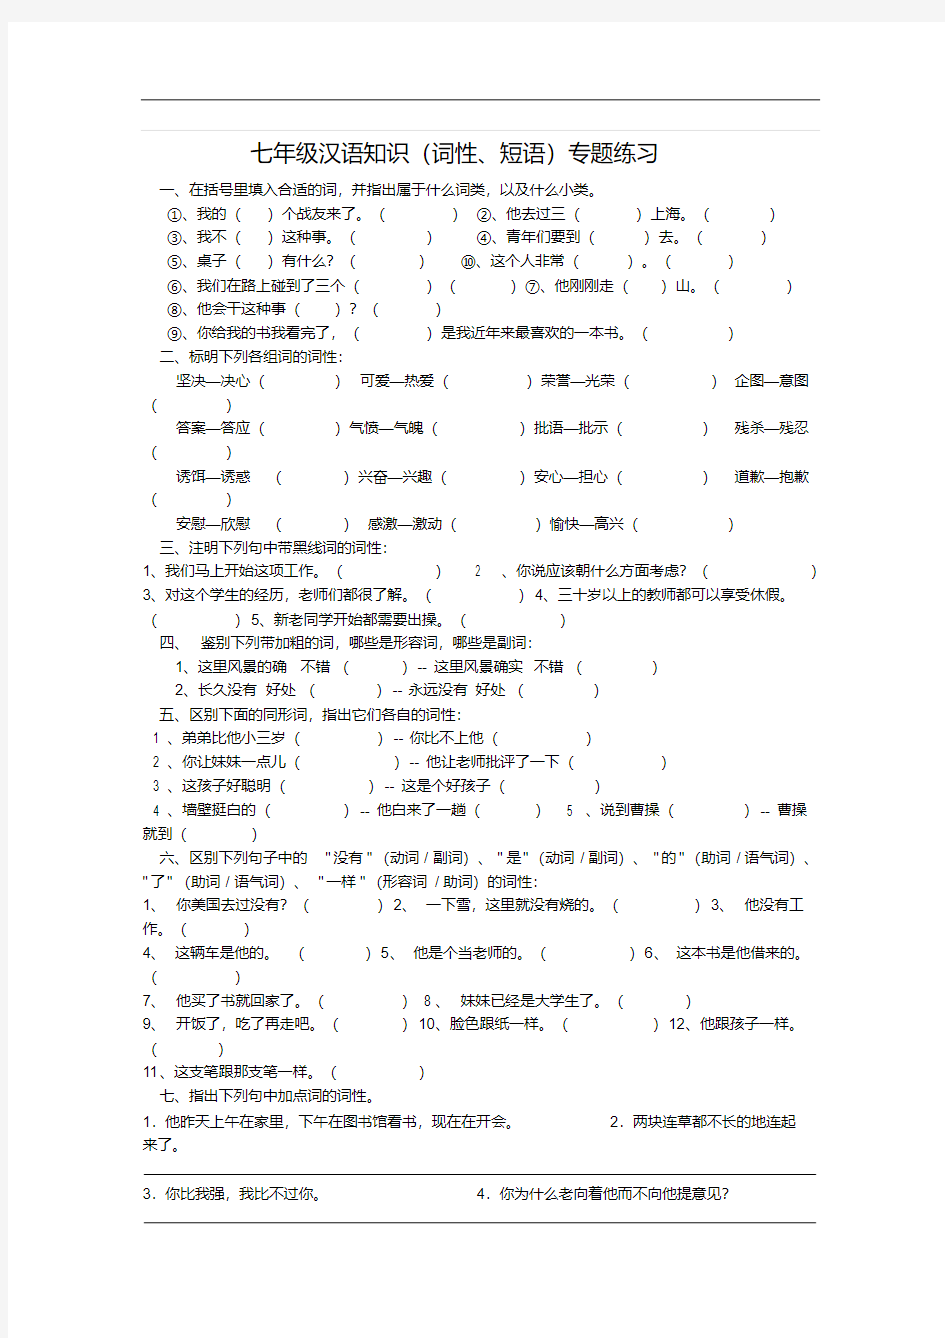 【初中语文】七年级语文汉语知识(词性、短语)专题练习语文版(20200716133403)